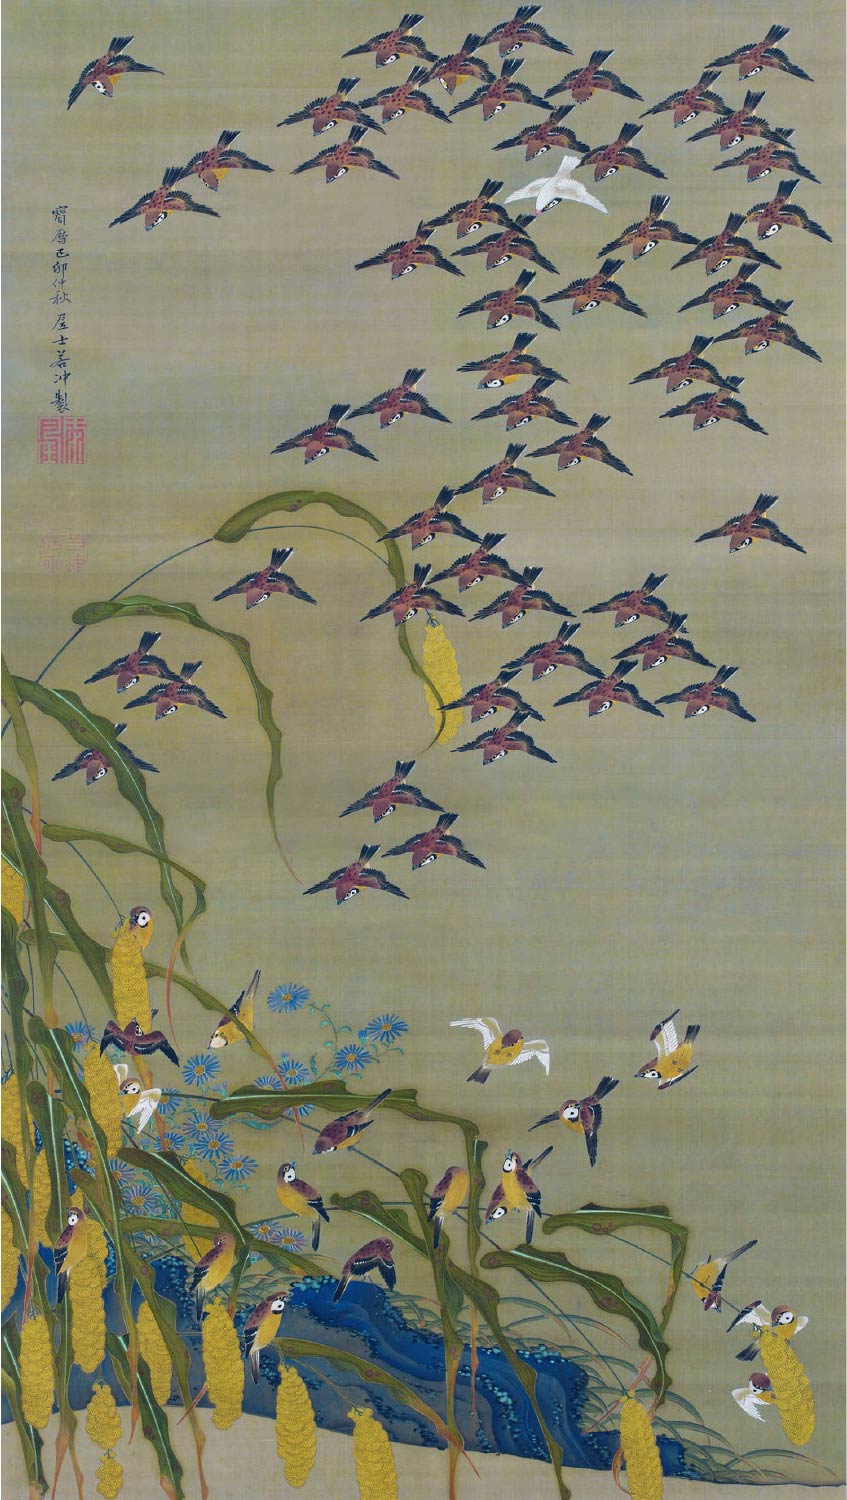 【無料壁紙】伊藤 若冲「秋塘群雀図 (1759)」 / Ito Jakuchu_Shuto Gunjaku-zu(Autumn Millet and Sparrows) (1759)